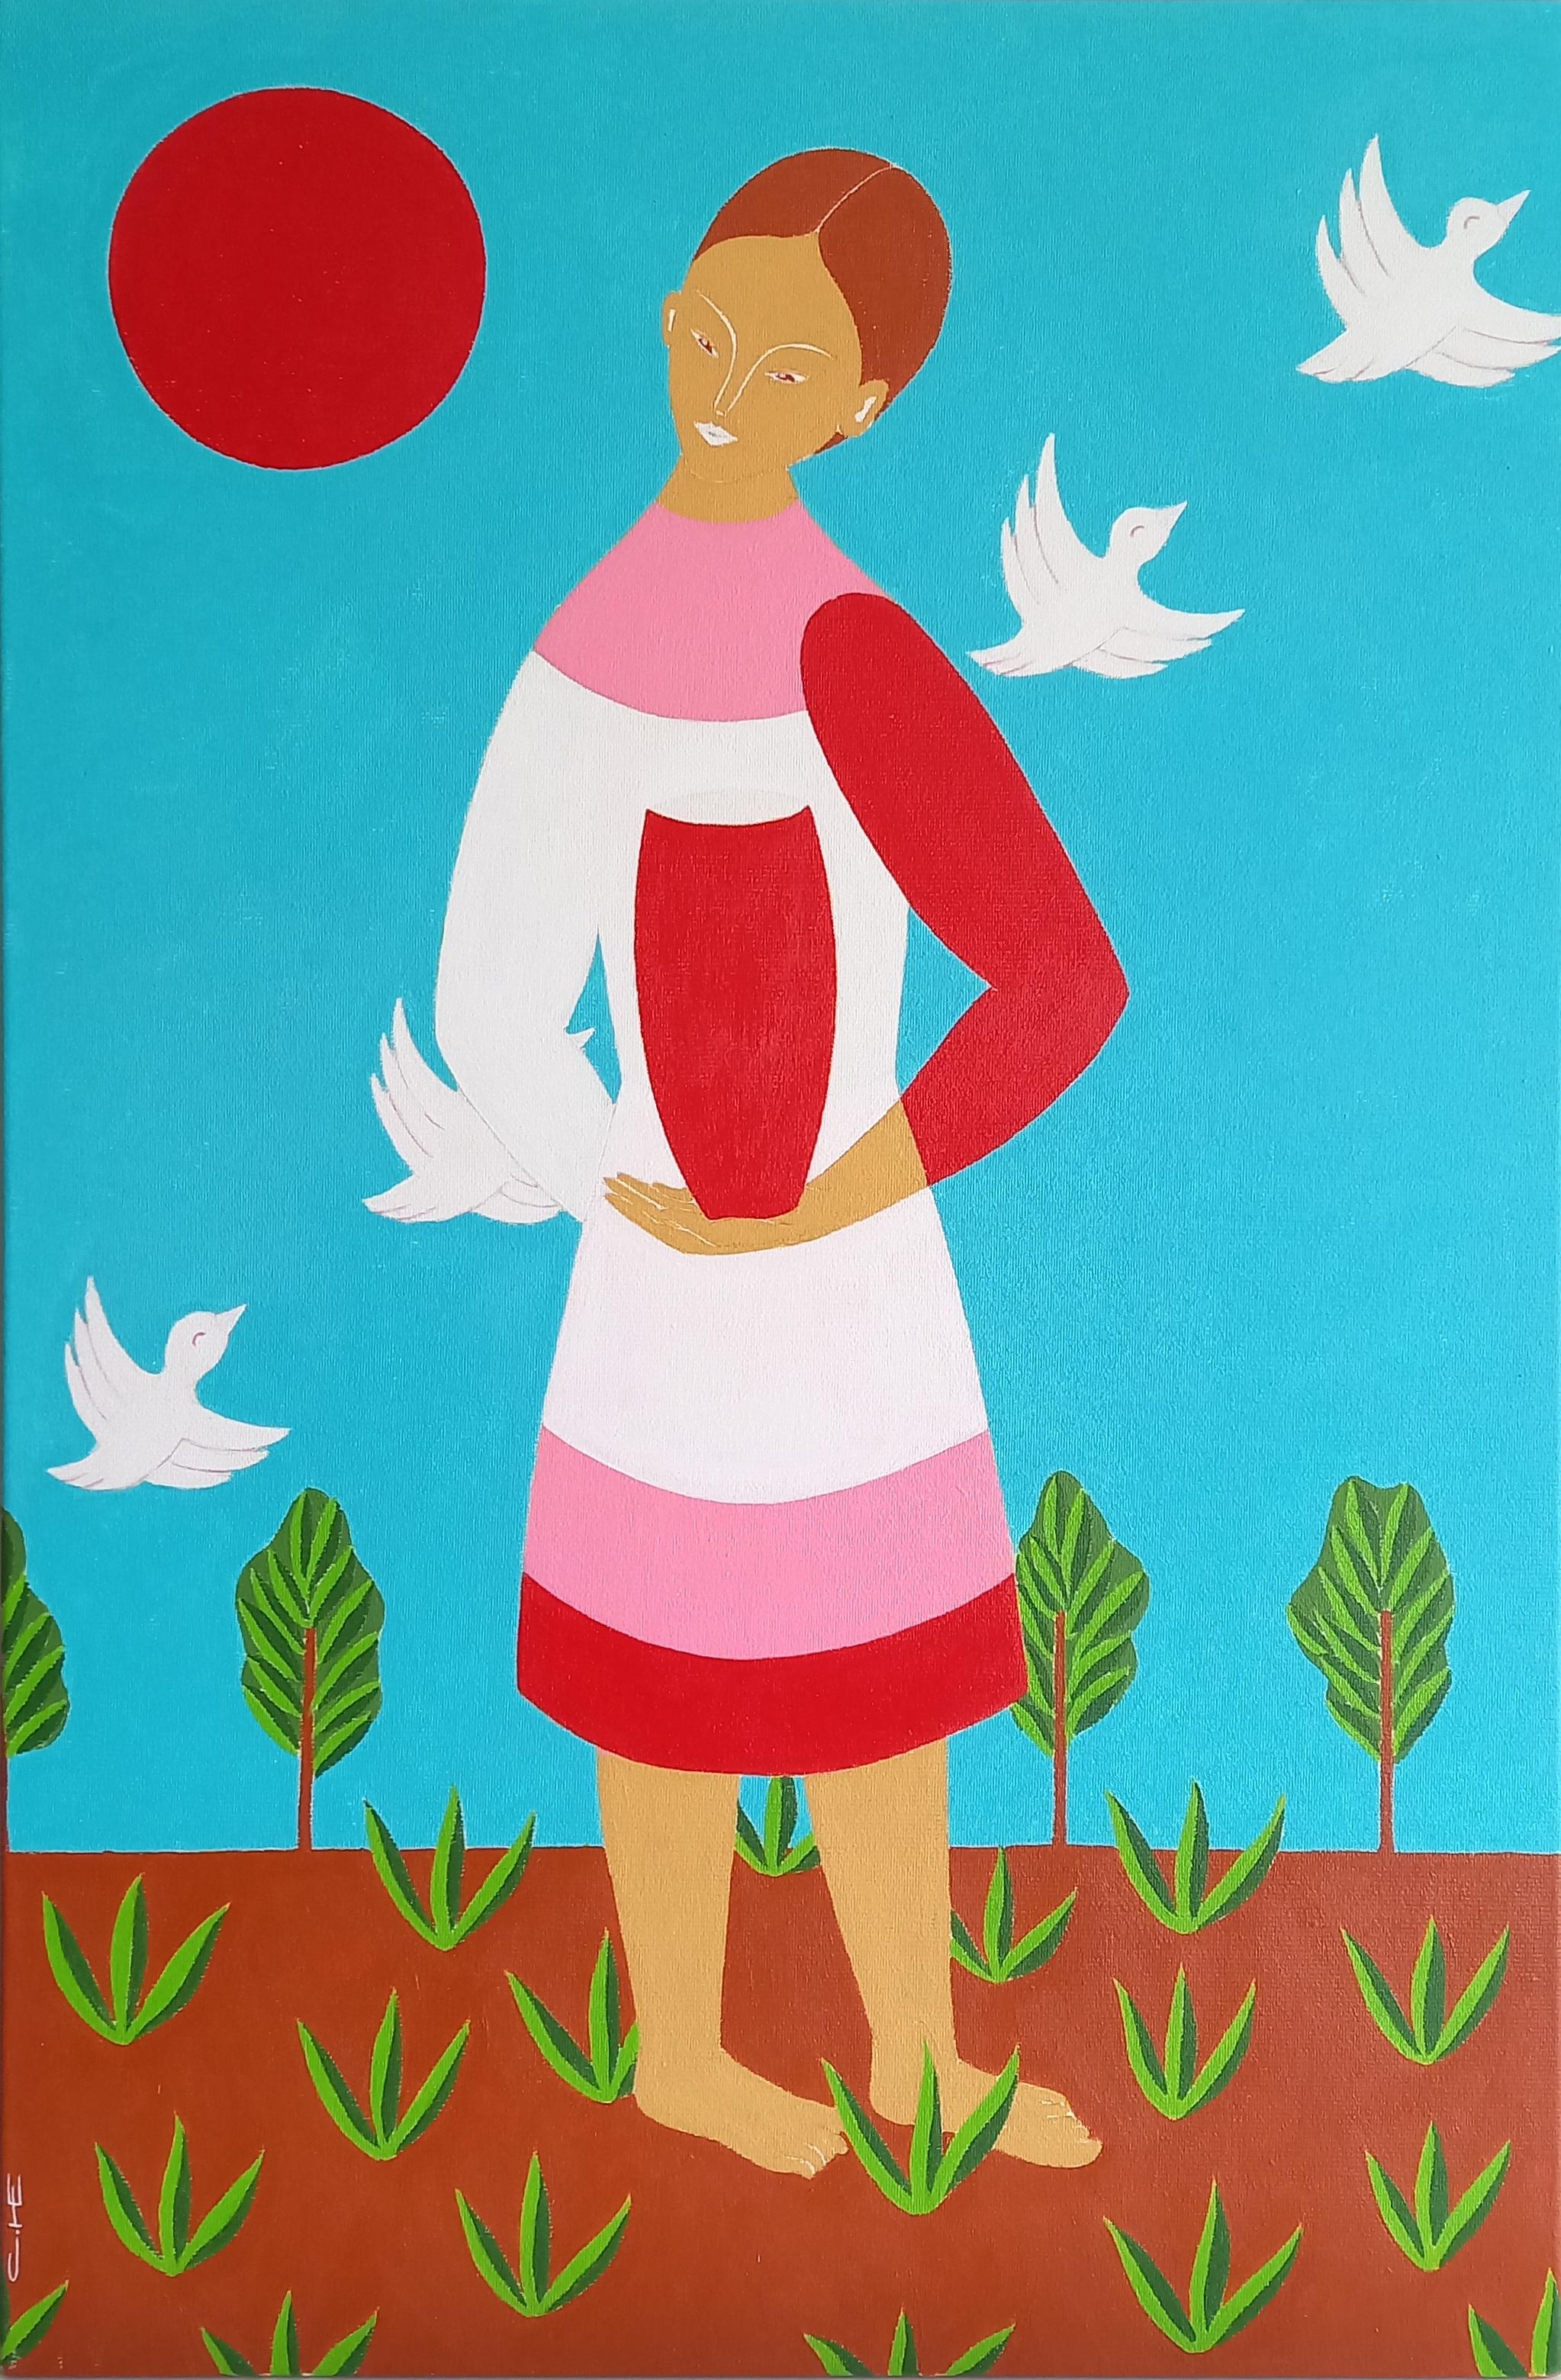 Girl, red jug and white birds, 60x40cm - Painting by Sasha Katinauskiene